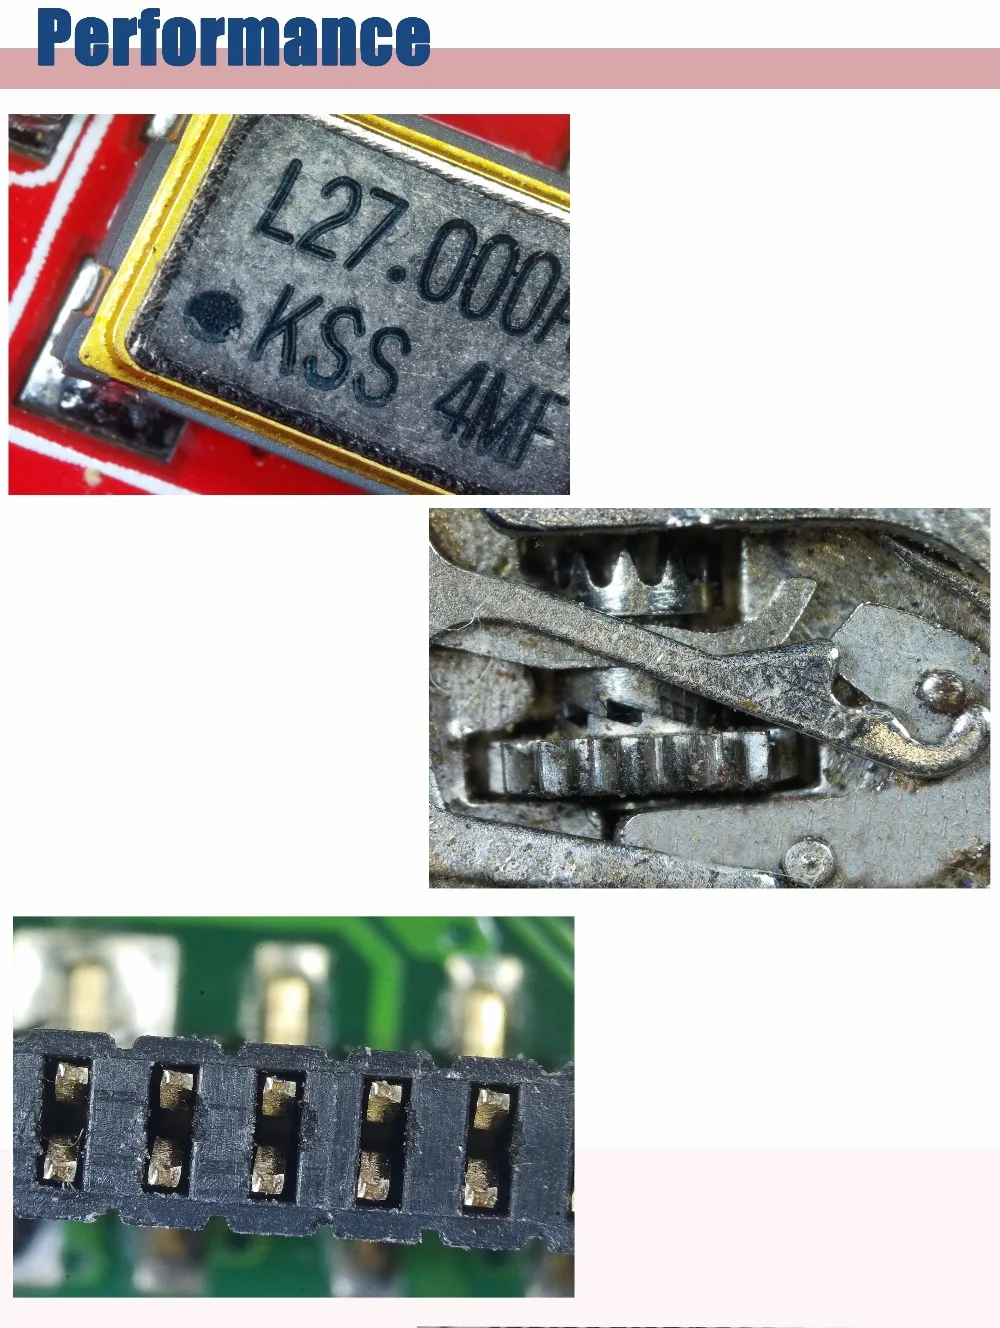 Andonstar HDMI/USB микроскоп цифровой микроскоп для мобильного телефона rapair инструмент для пайки